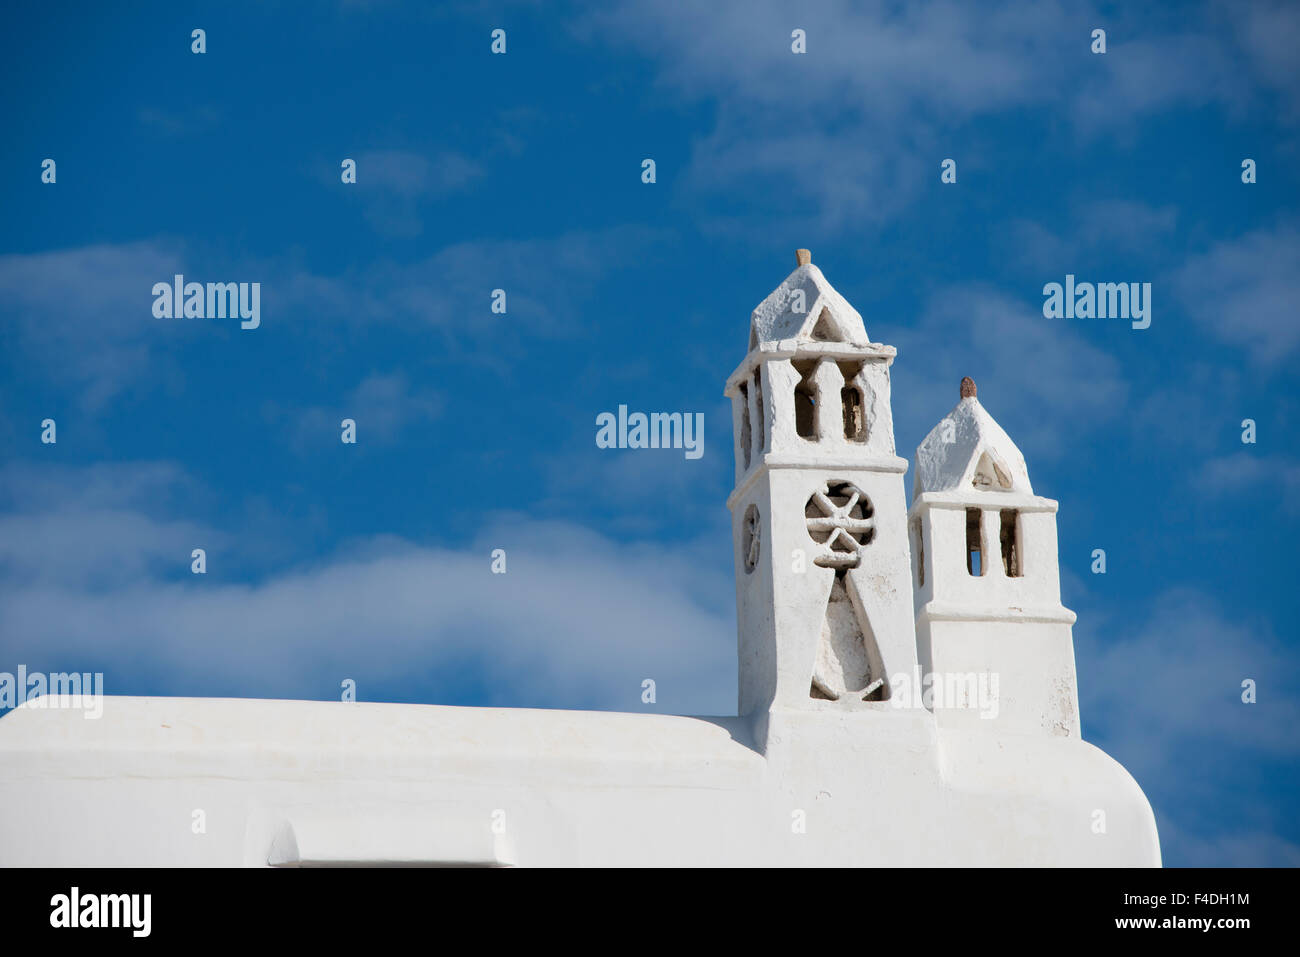 Grèce, les Cyclades, Mykonos, Hora. Sur le toit typique blanchi à la chaux montrant l'architecture traditionnelle des Cyclades. Tailles disponibles (grand format). Banque D'Images